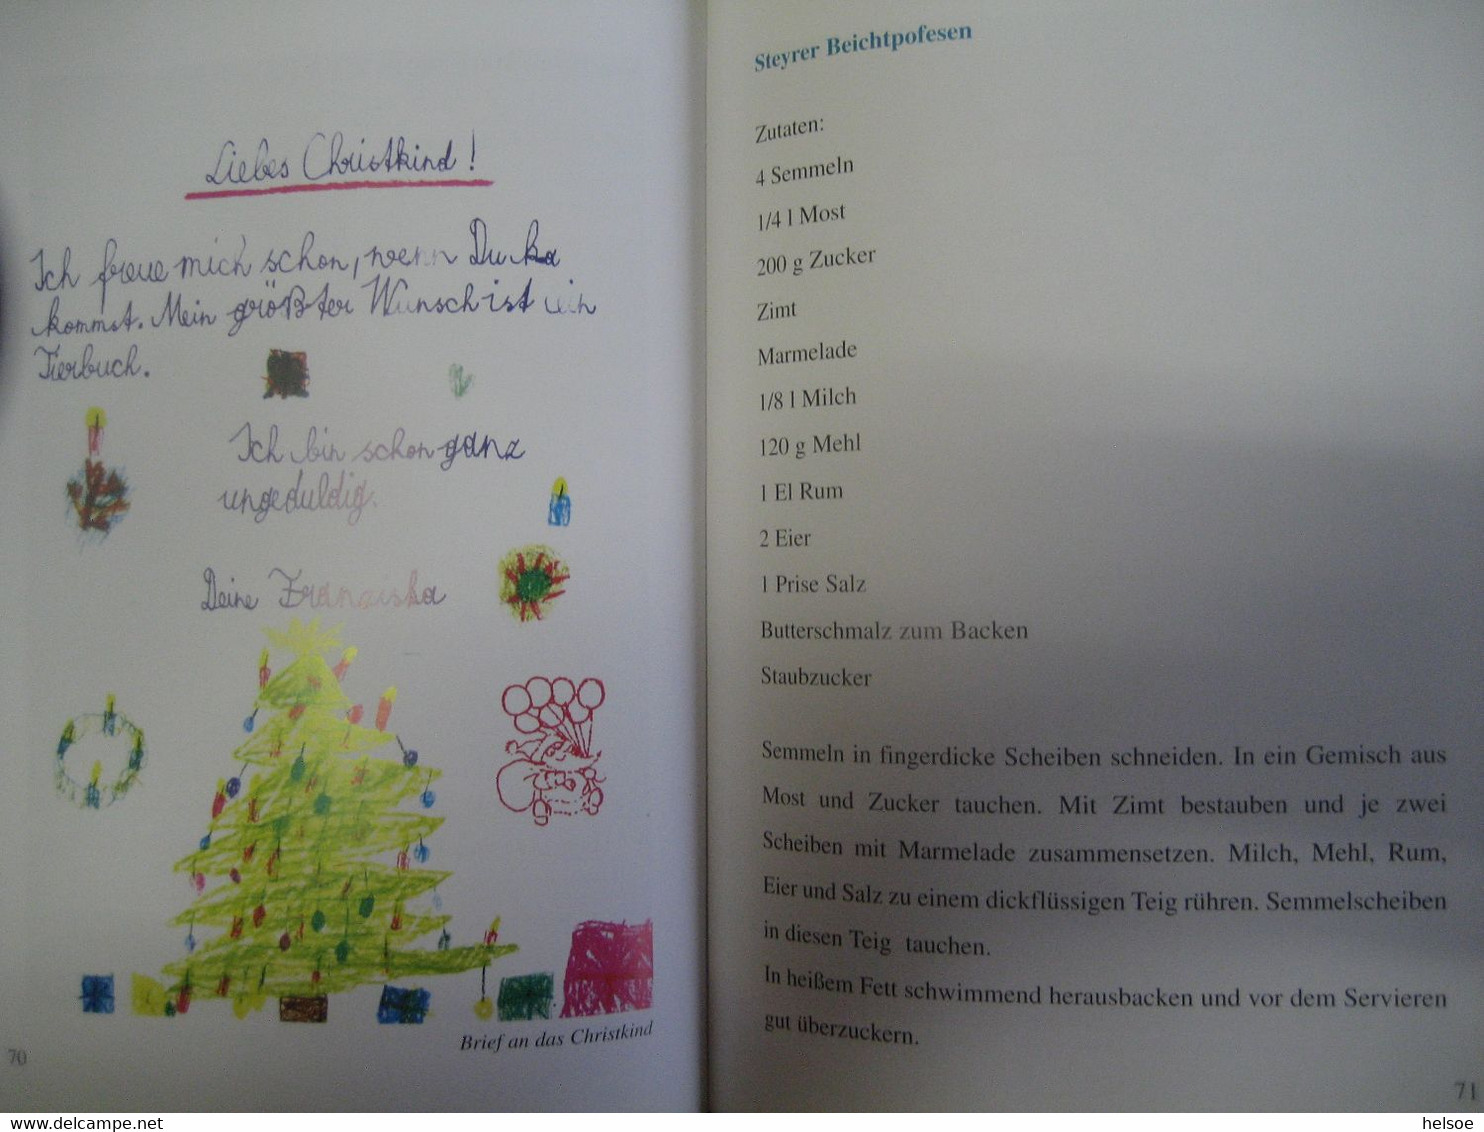 Österreich 2001- Christkindl. Wo das Christkind die Briefe aufgibt. Handbuch mit 80 Seiten aus dem Norka Verlag